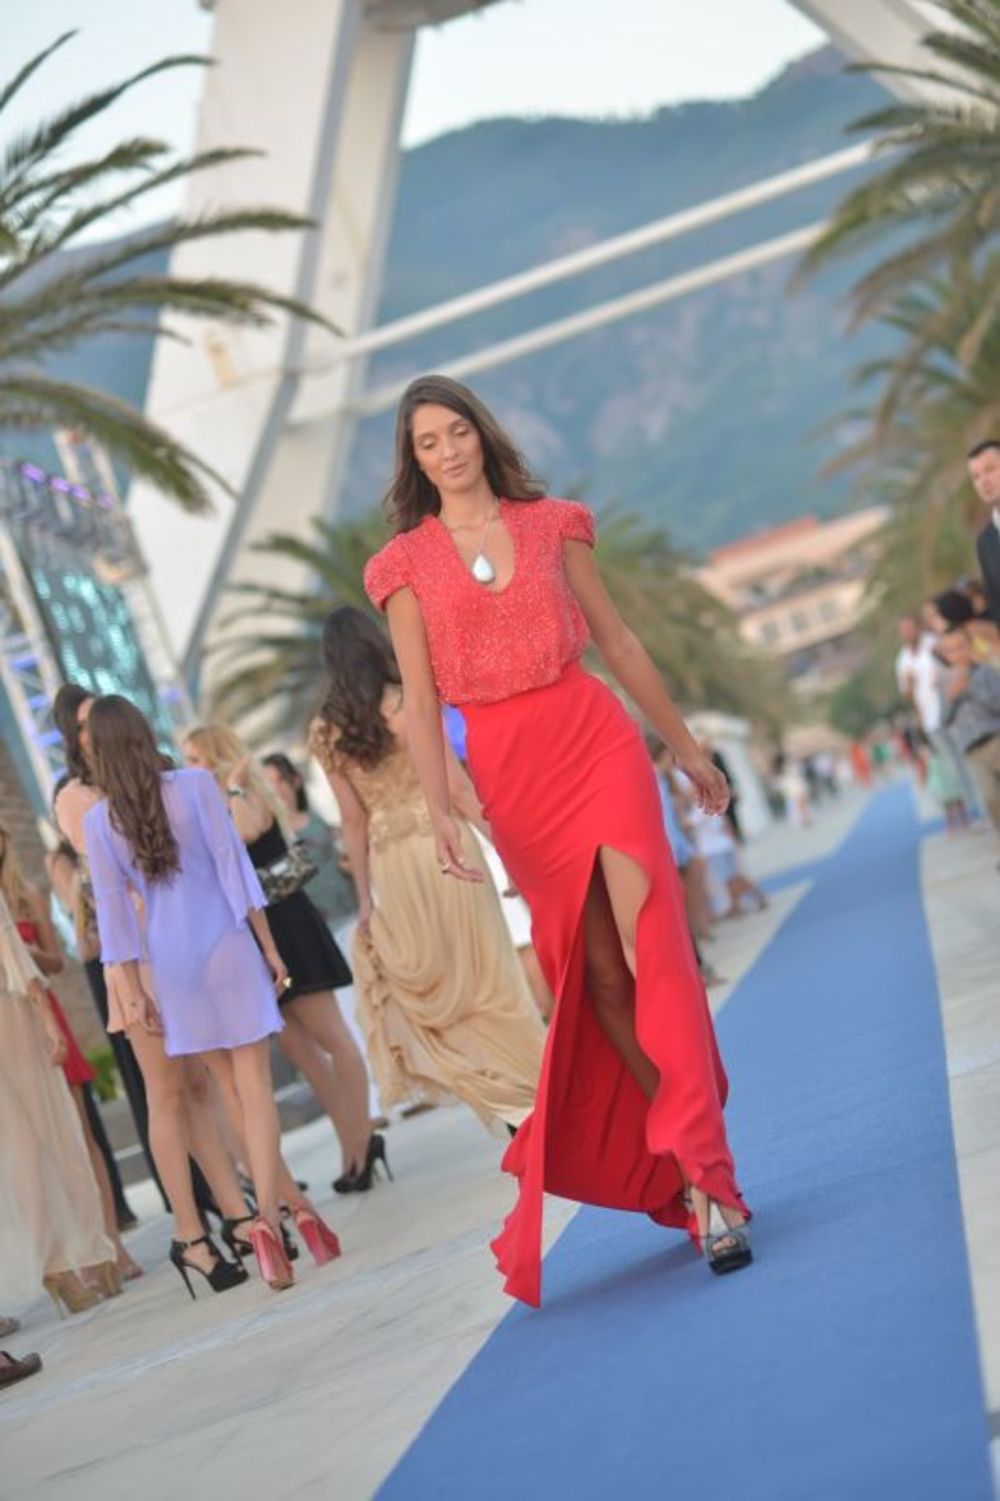 U luksuznom ambijentu crnogorskog Porto Montenegra predstavljena je nova kolekcija luksuznog nakita Misahara, a modeli su nosili haljine Biljane Tipsarević. Ceo performans bio je organizovan u znaku tajnog agenta 007,  a na reviji koju su upriličili Biljana i